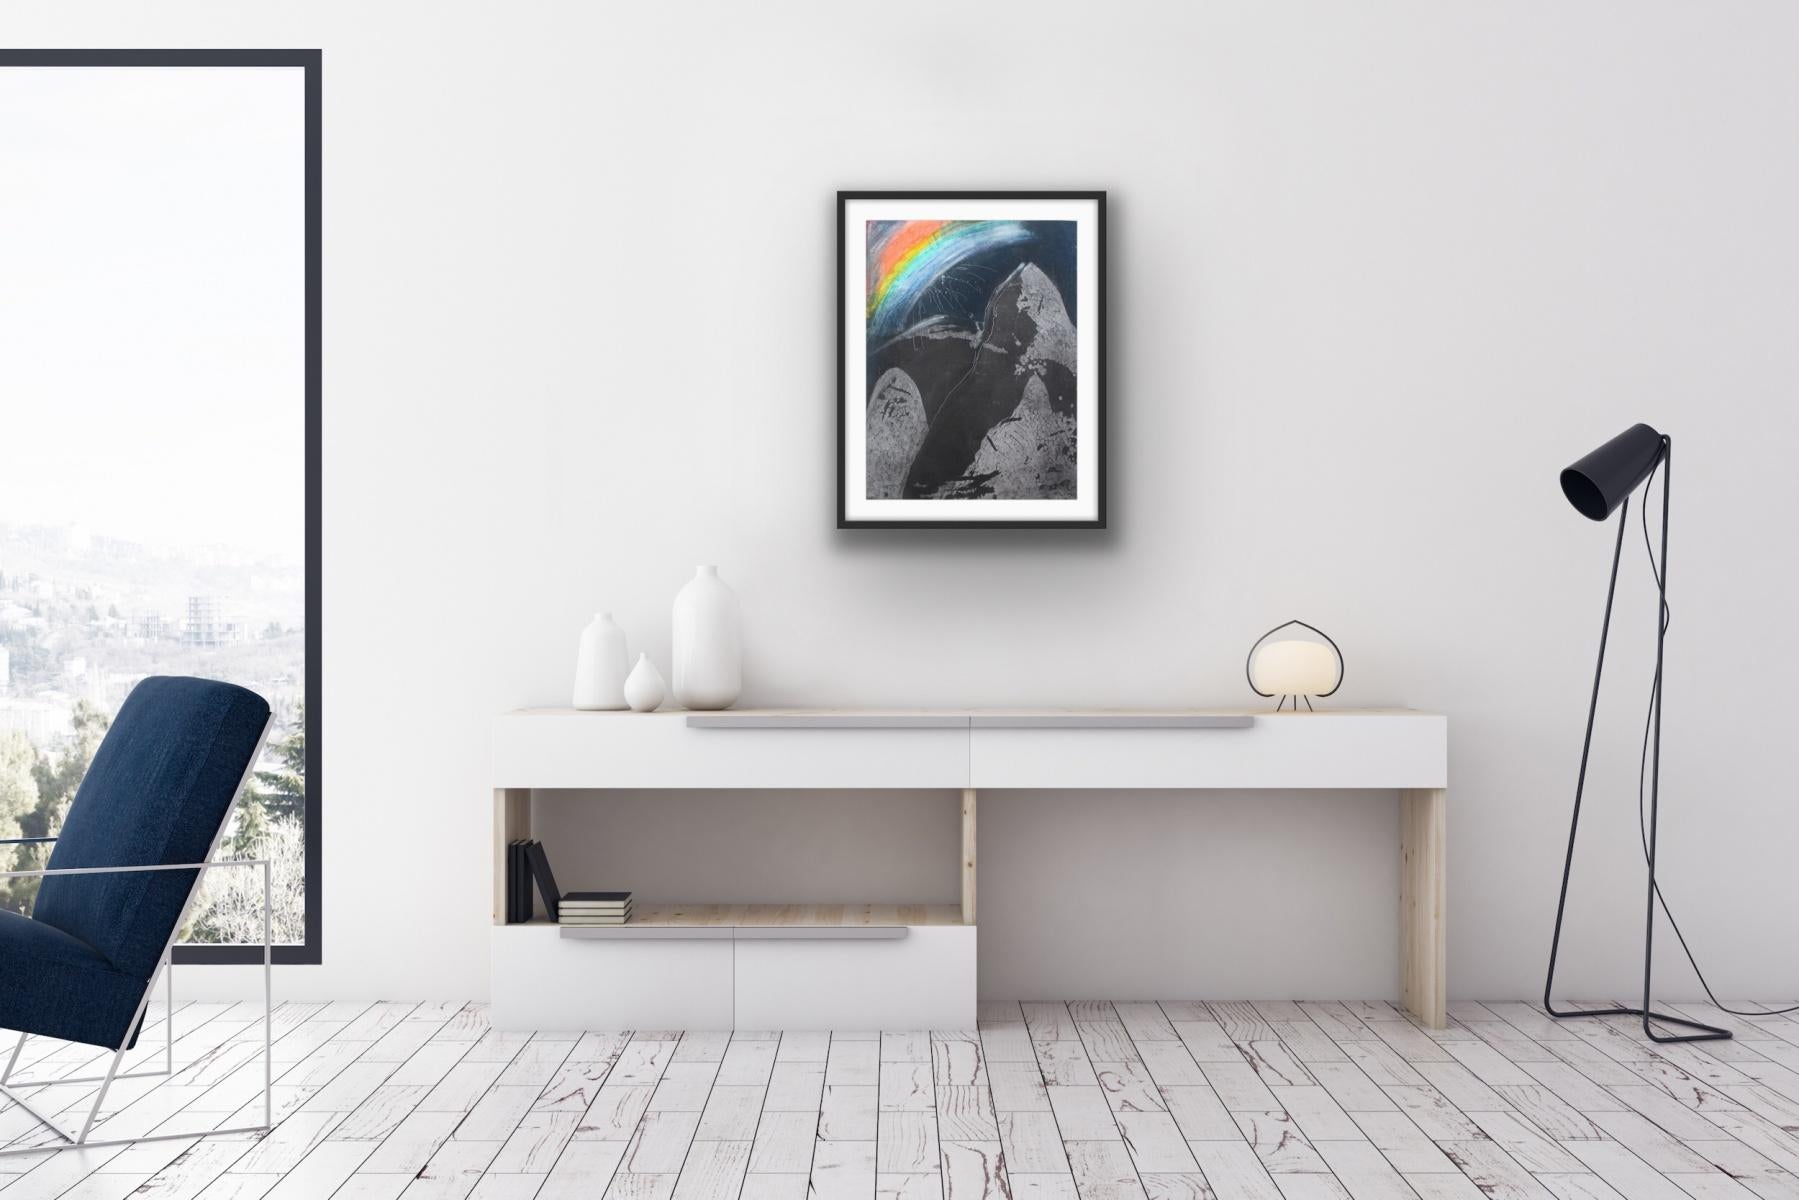 Ararat - 20. Jahrhundert, Abstrakter Radierungsdruck, Dunkle Farben, Regenbogen, Polnische Kunst (Grau), Abstract Print, von Rafal Strent